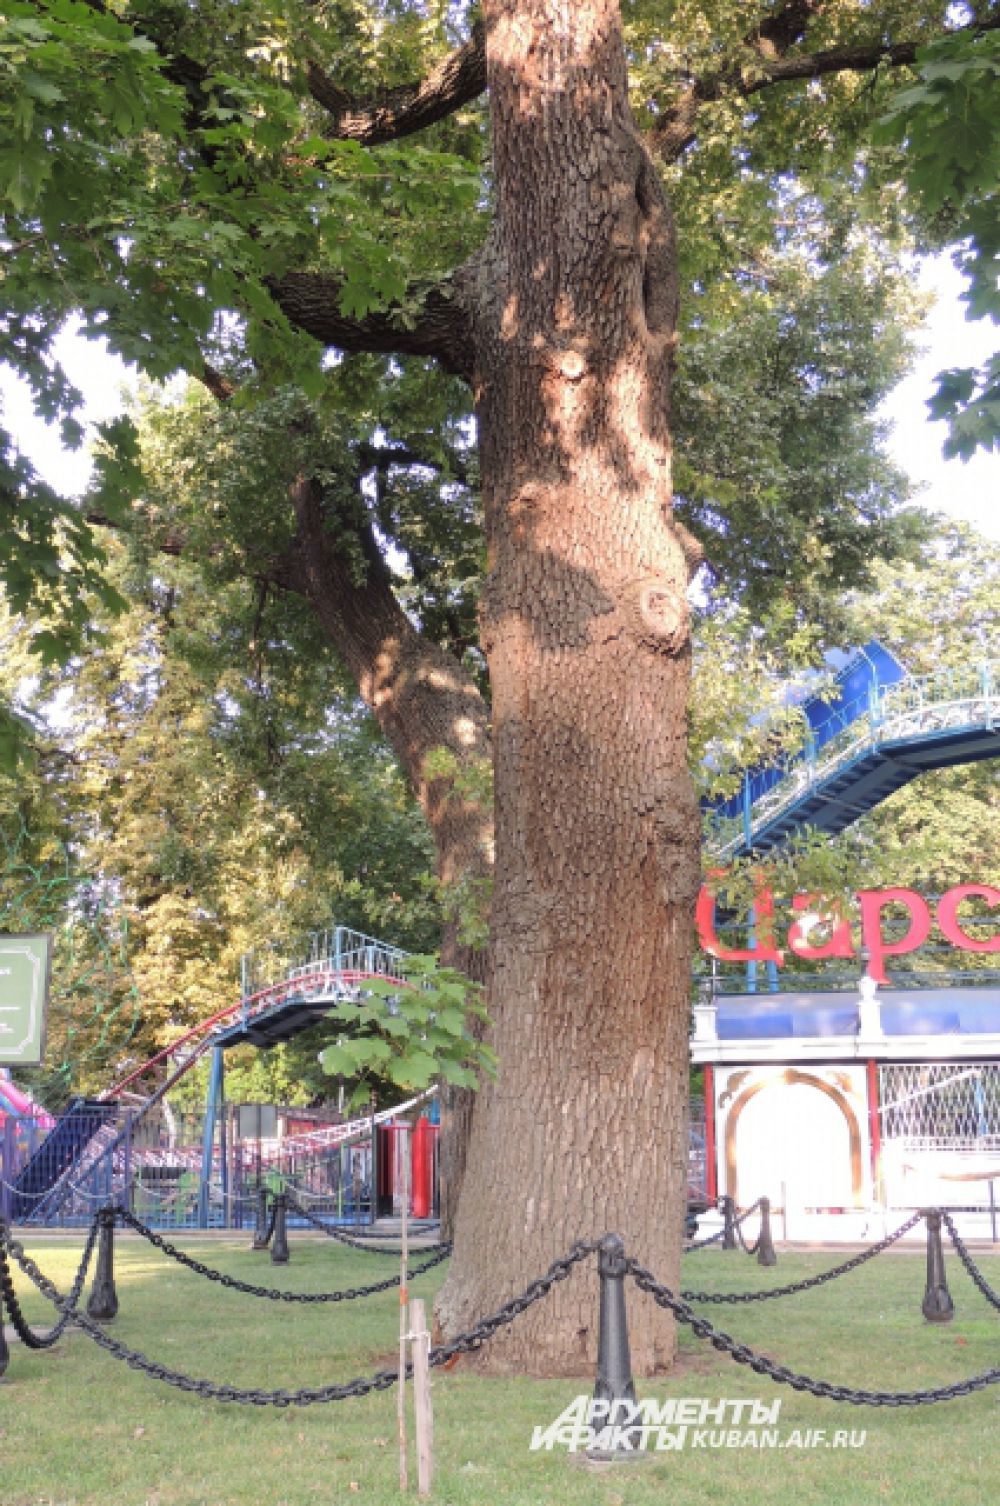 Свой шестисотый юбилей отметил в этом году заповедный дуб, полюбоваться которым можно в Городском саду Краснодара.